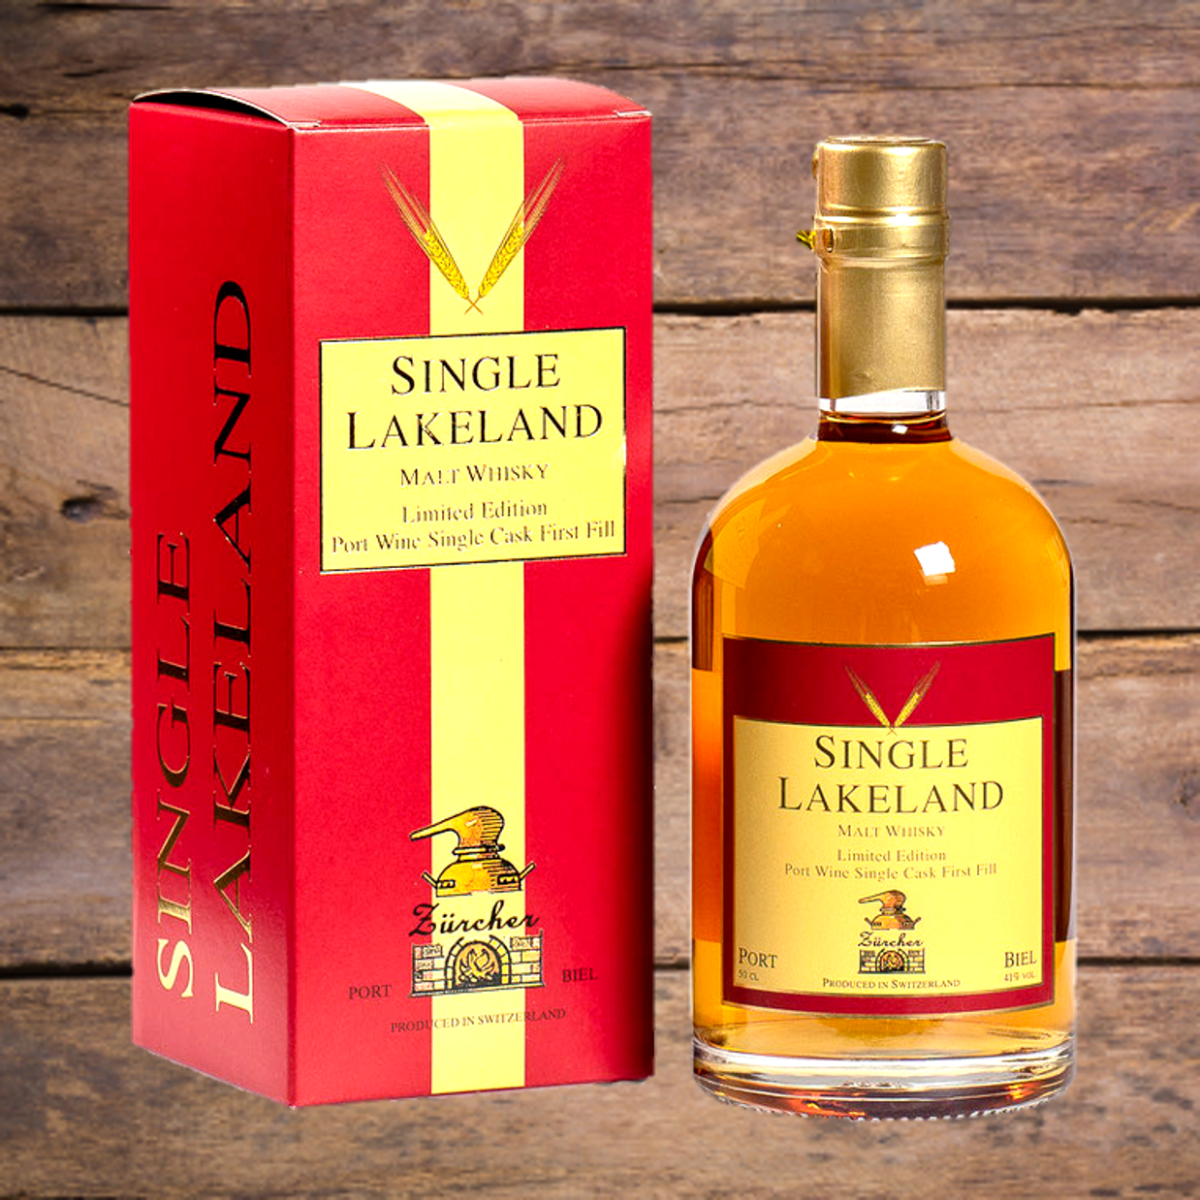 Seeländer Single Lakeland Malt Whisky Limited Edition